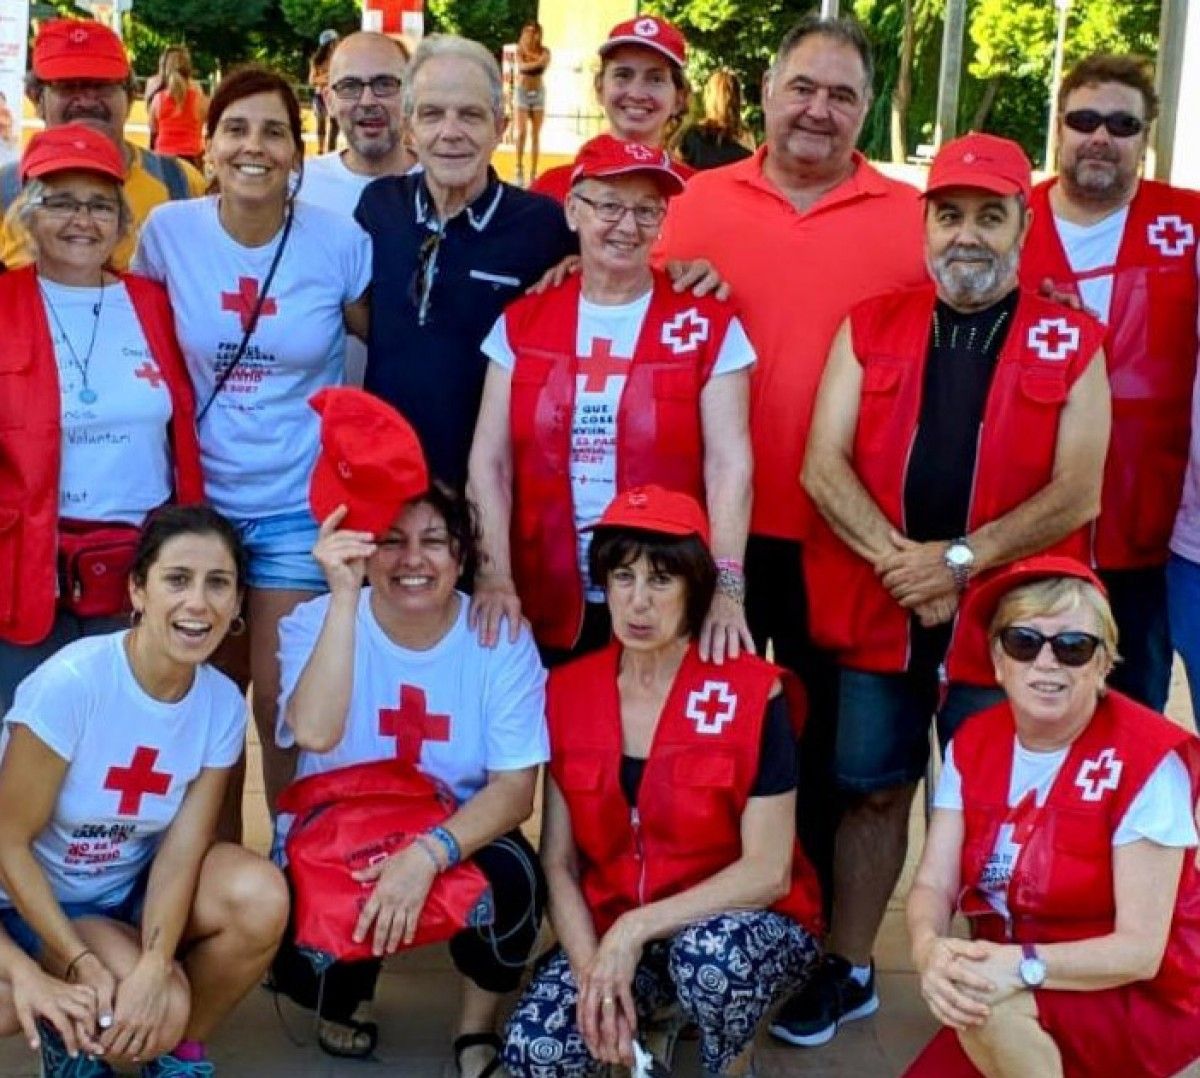 Jordi Garcia, amb un jersei vermell, nou president de la Creu Roja Sant Celoni i Baix Montseny. A la seva dreta Josep Quitet, president de la Creu Roja Catalunya.